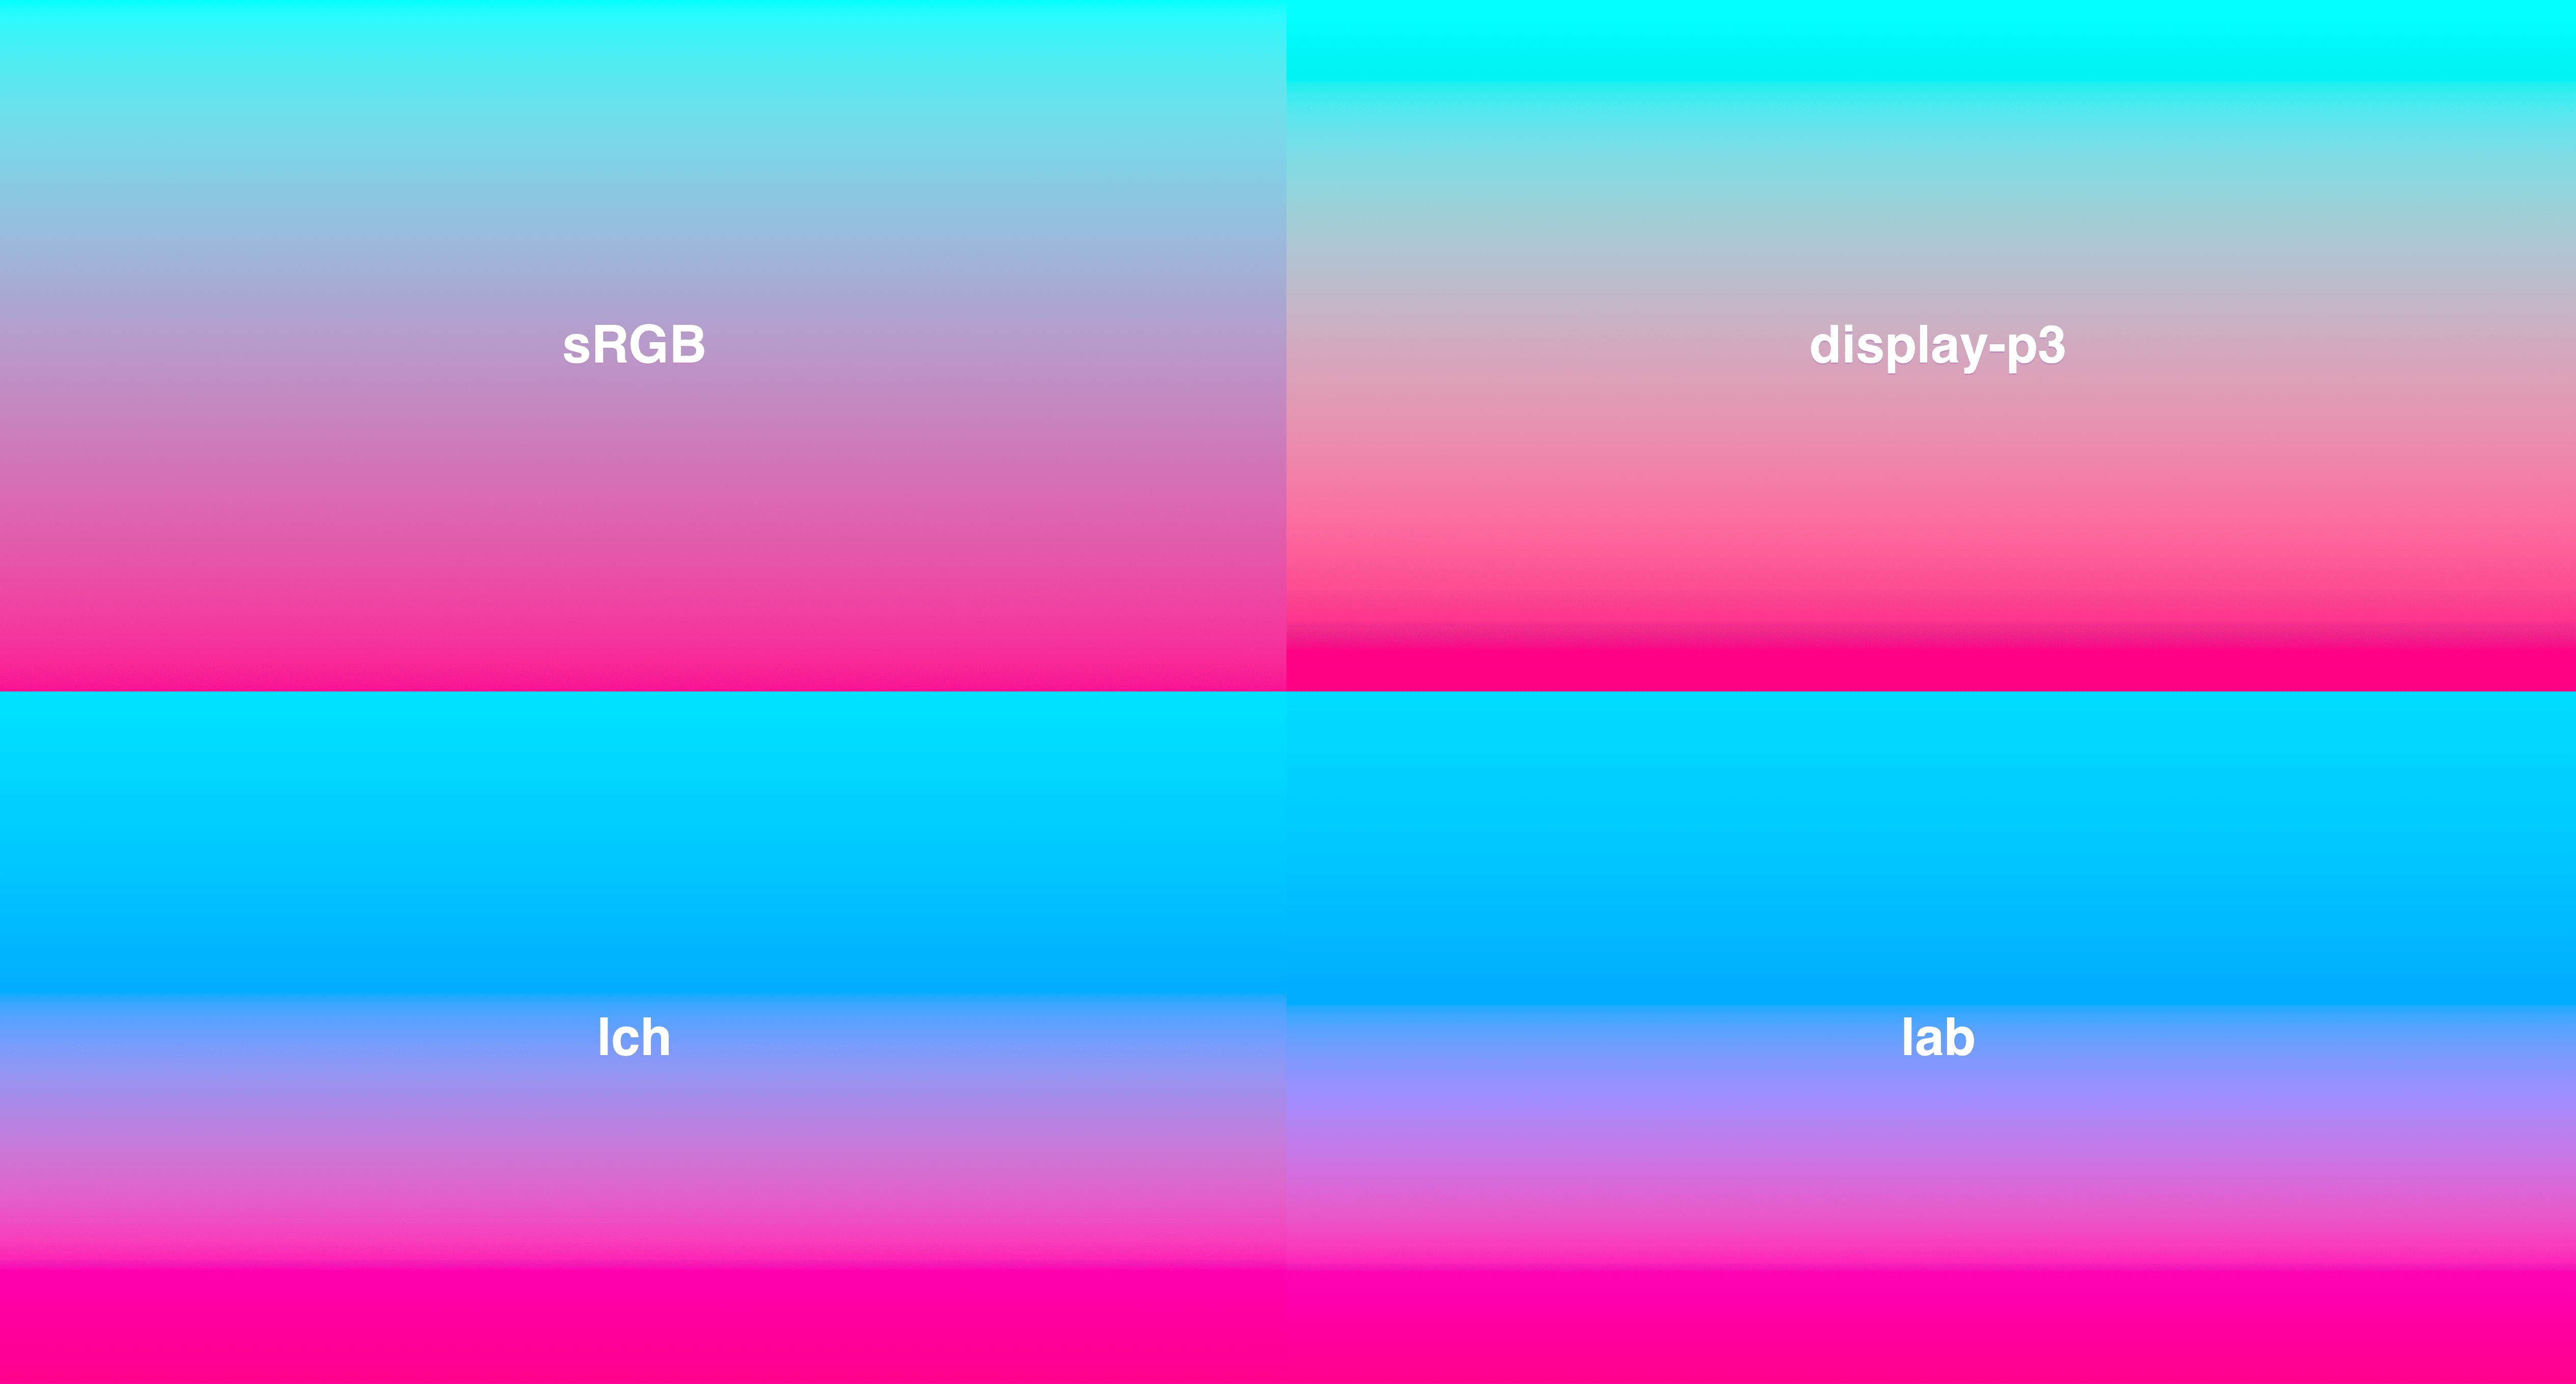 在格狀版面中呈現 4 種漸層，全部從青色到深粉紅。LCH 和 LAB 的色彩更一致，其中 sRGB 中間會較為不飽和。